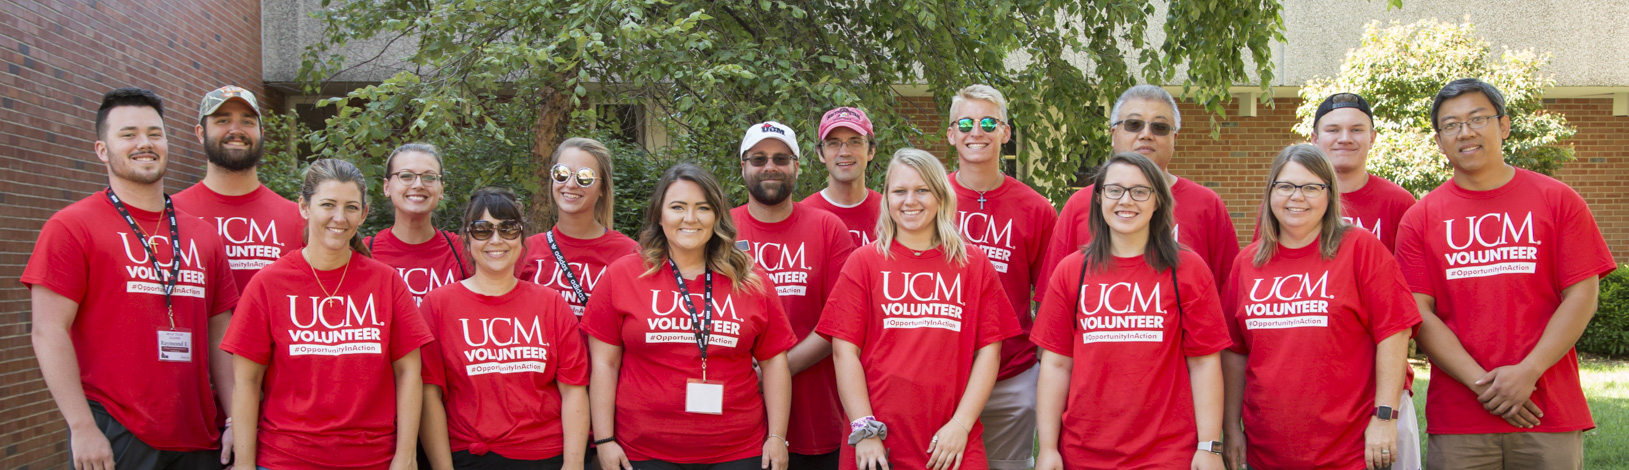 ucm-volunteers